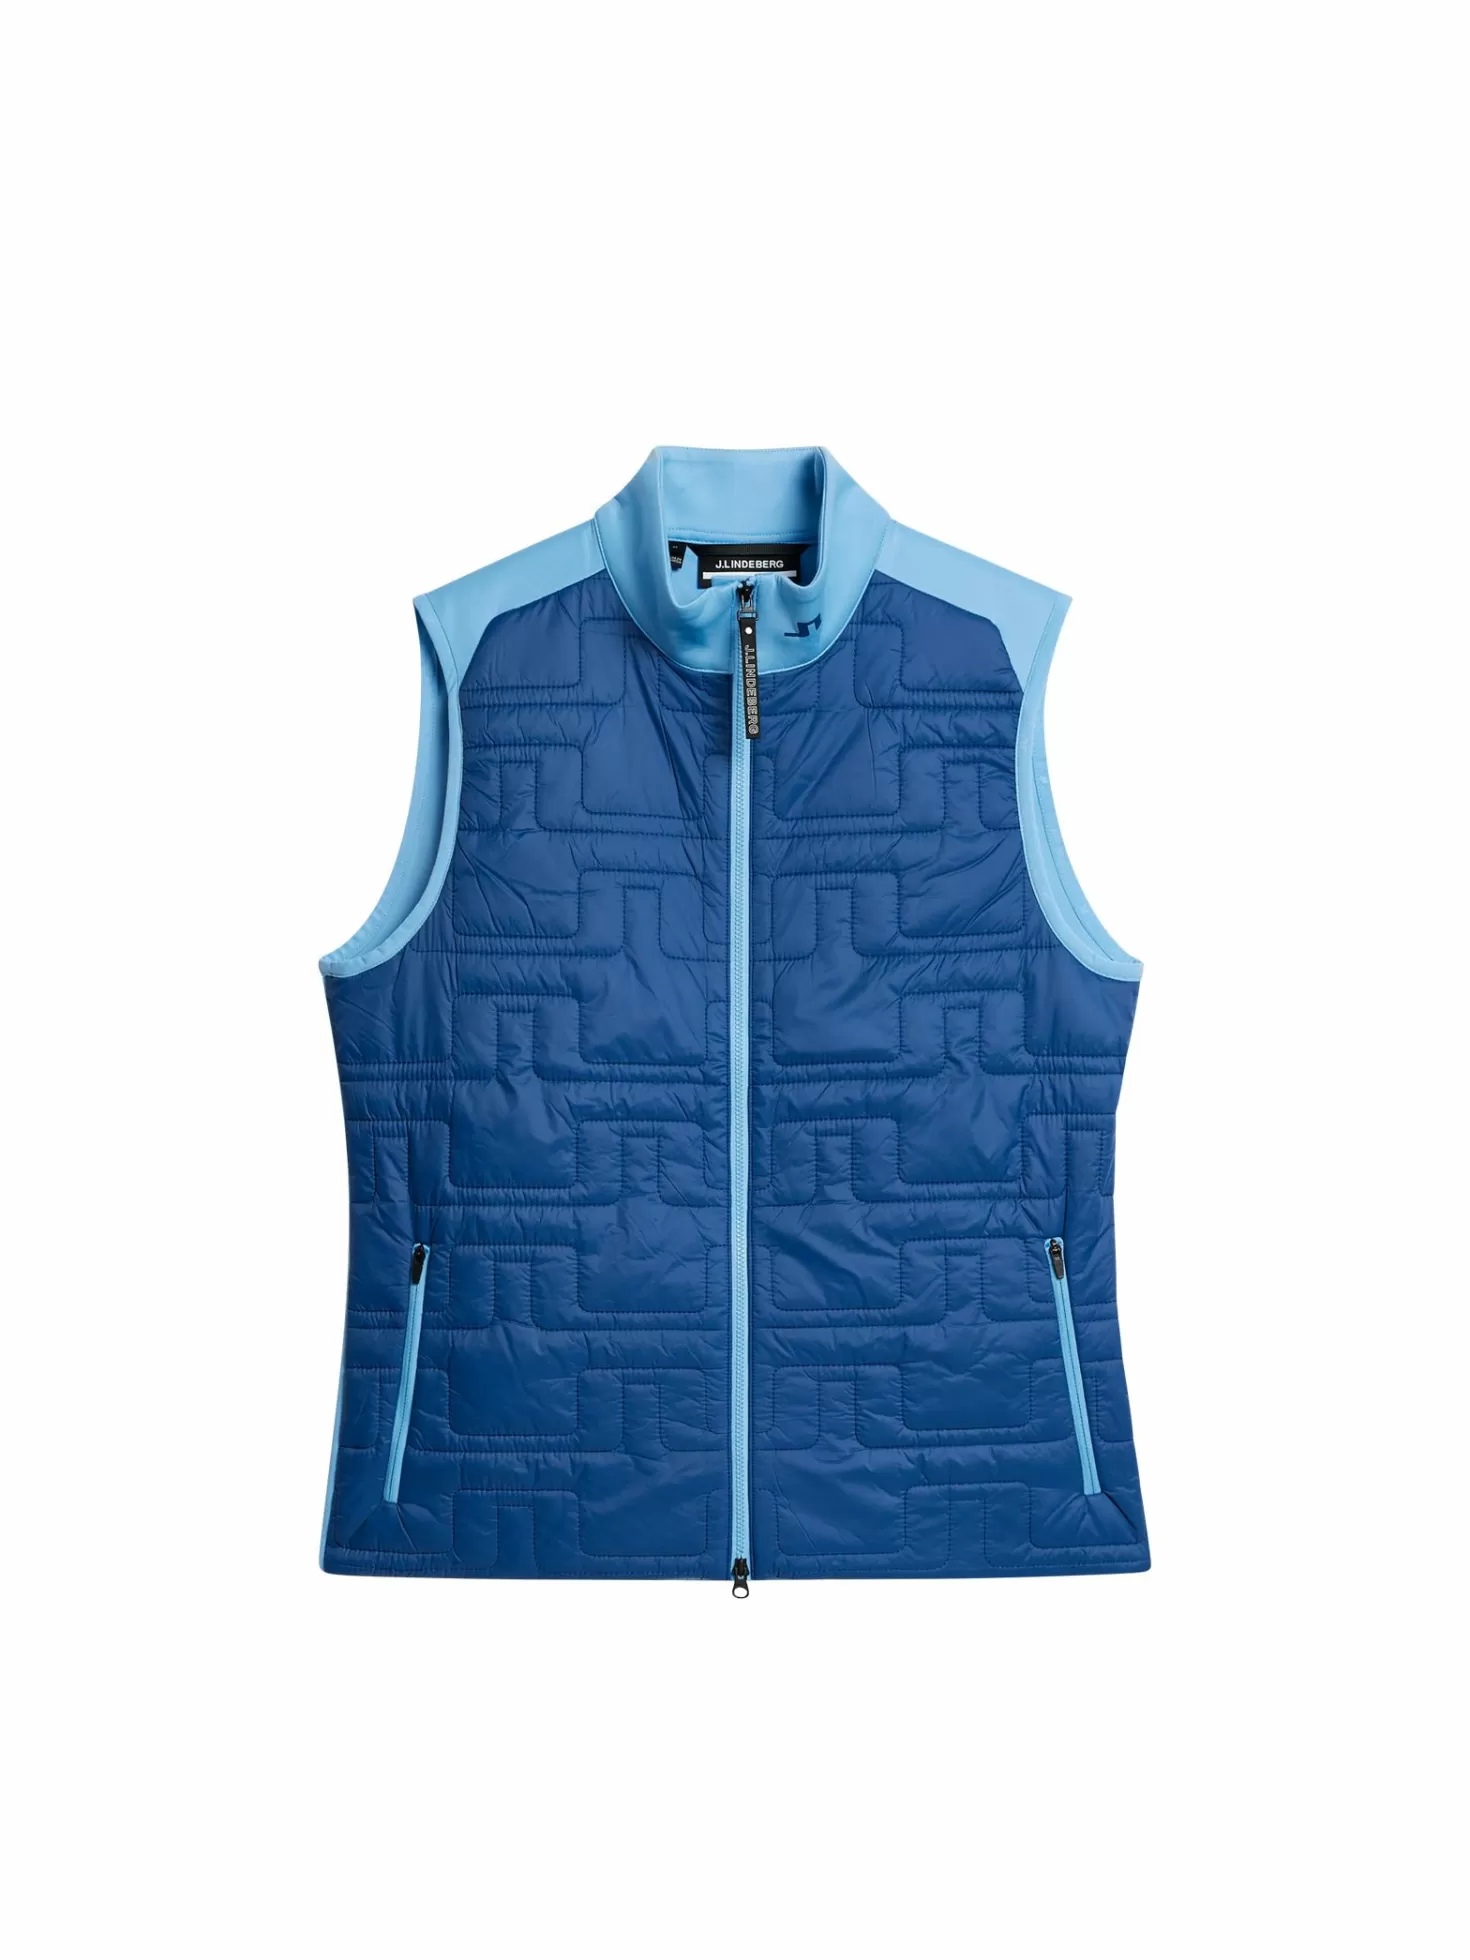 Gilets | Jackor<J.Lindeberg W Quilt Hybrid Vest Black